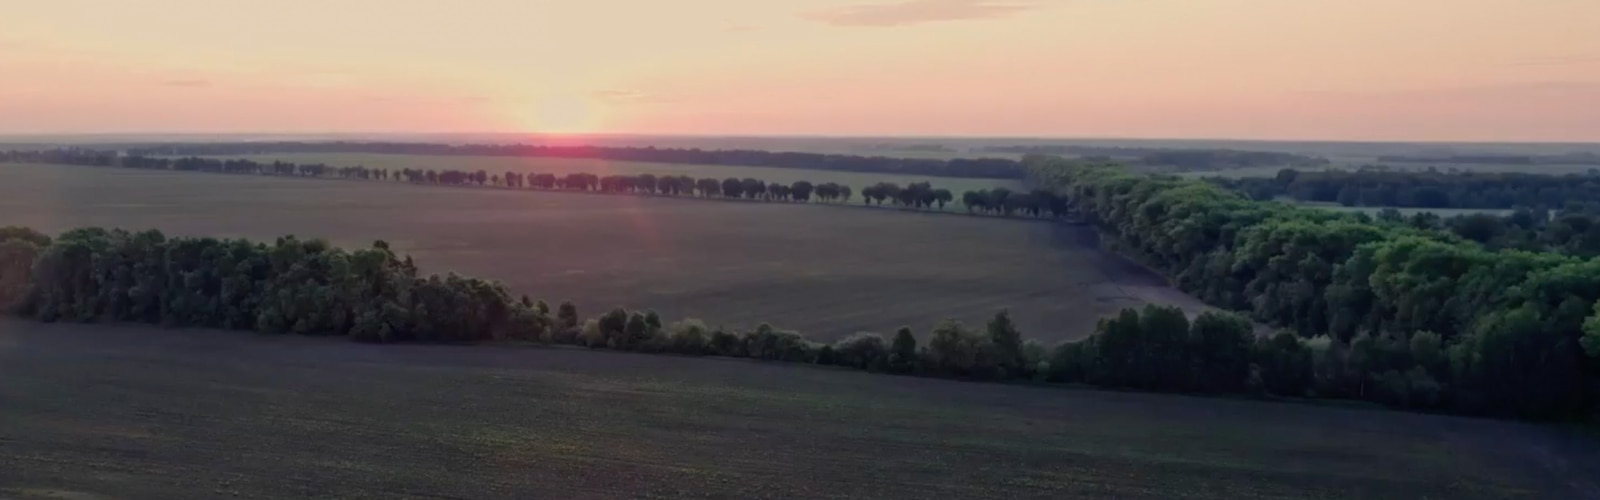 Des champs séparés par des arbres, et un coucher de soleil en fond